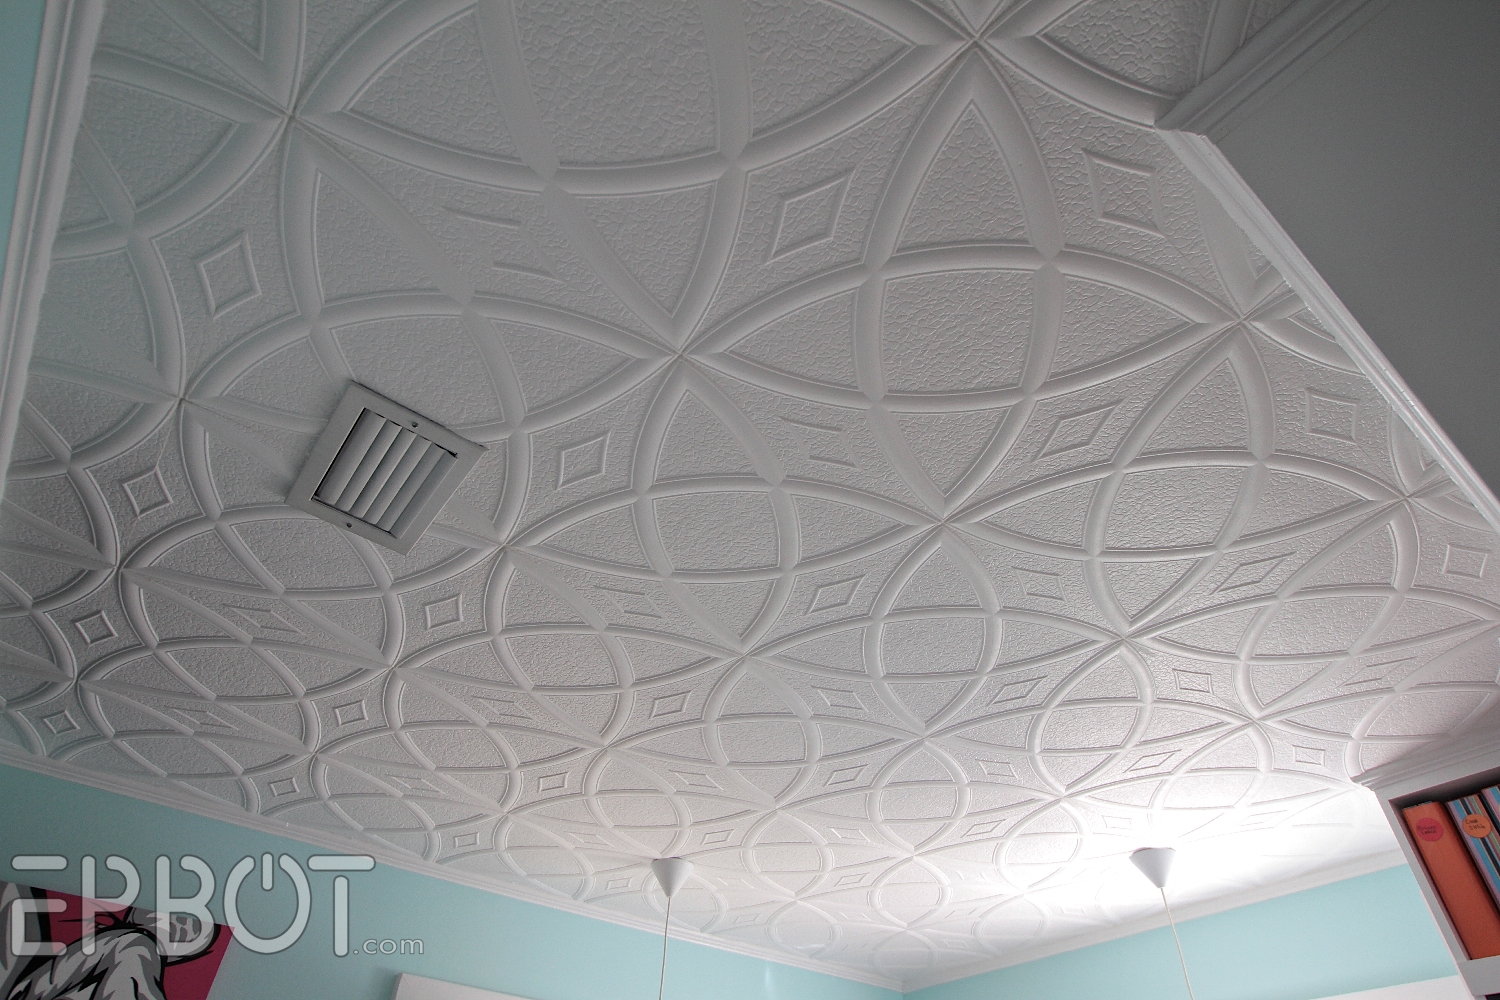 Glue For Polystyrene Ceiling Tiles Glue For Polystyrene Ceiling Tiles epbot diy faux tin tile ceiling 1500 X 1000